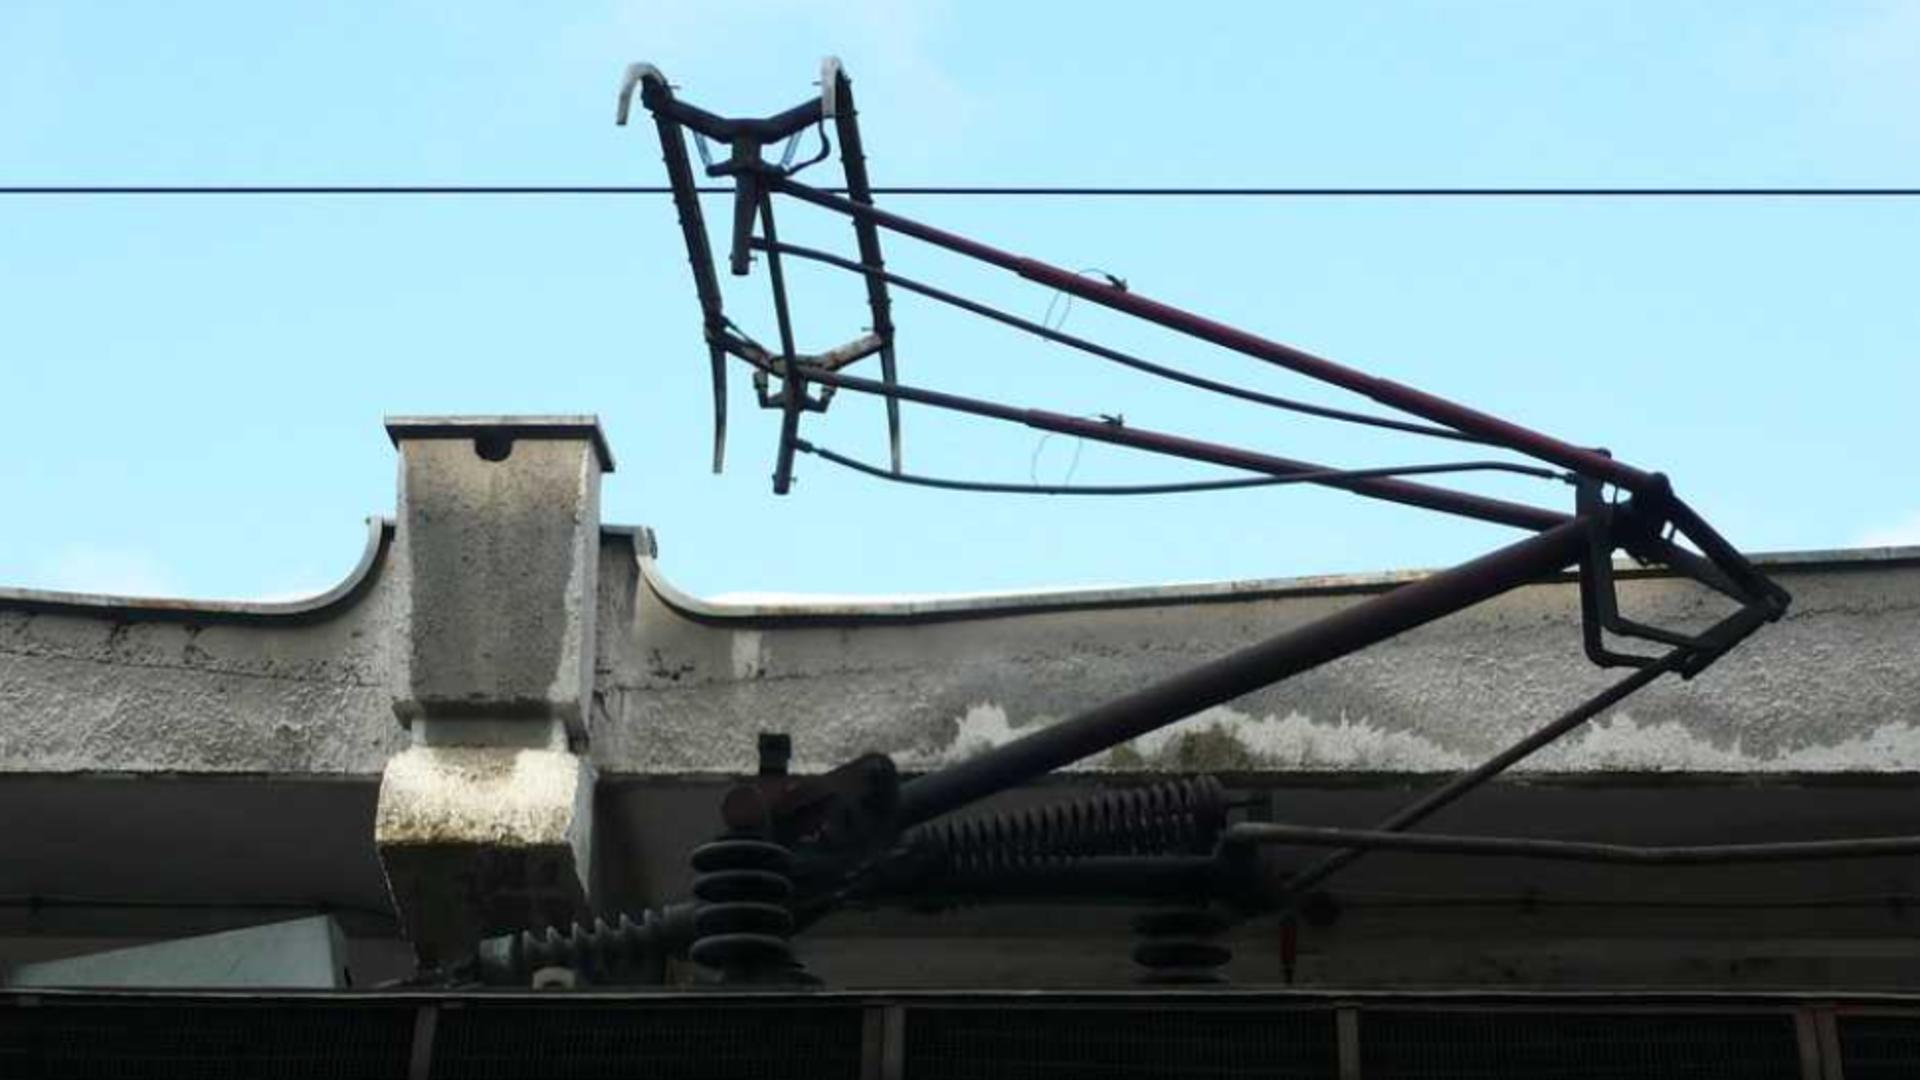 Pagubă uriașă la CFR: Furt de cabluri de la locomotive din depoul Constanța - 2 bărbați au fost arestați